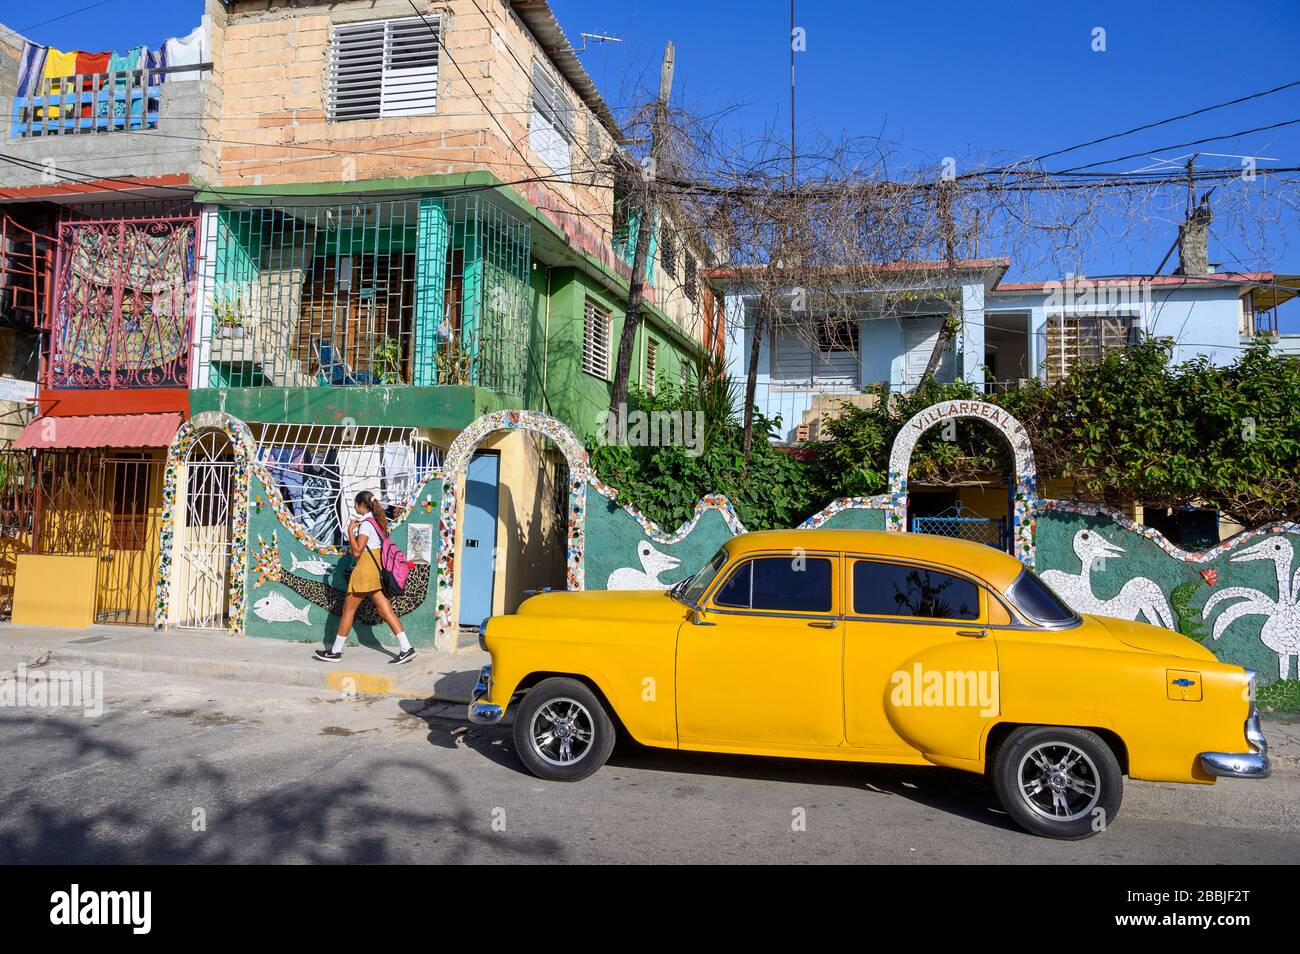 Fusterlandia, instalaciones de arte público del artista local José Fuster, con coloridos mosaicos caprichosos, Playa de Jaimanitas, la Habana, Cuba Foto de stock